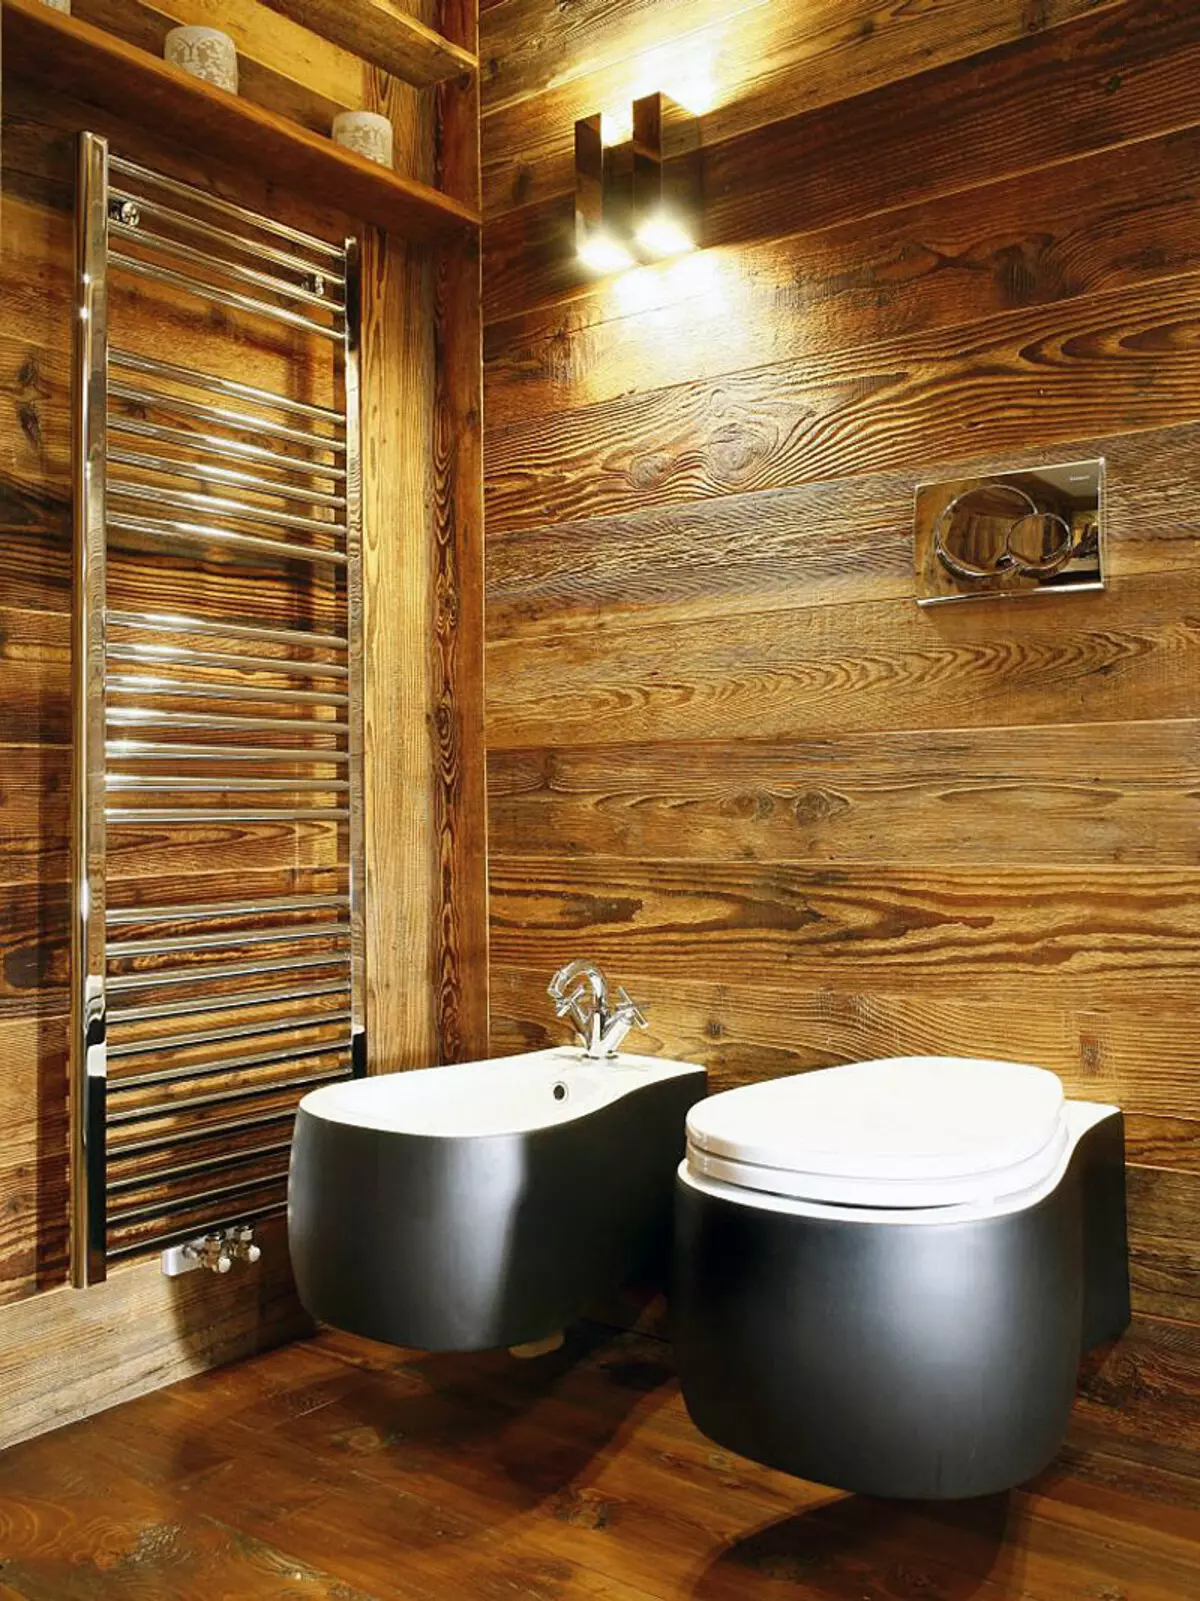 חדר אמבטיה בבית עץ (76 תמונות): עיצוב חדר בבית של בר בארץ, דוגמאות של גימור הרצפה, תוכניות אוורור 10475_6